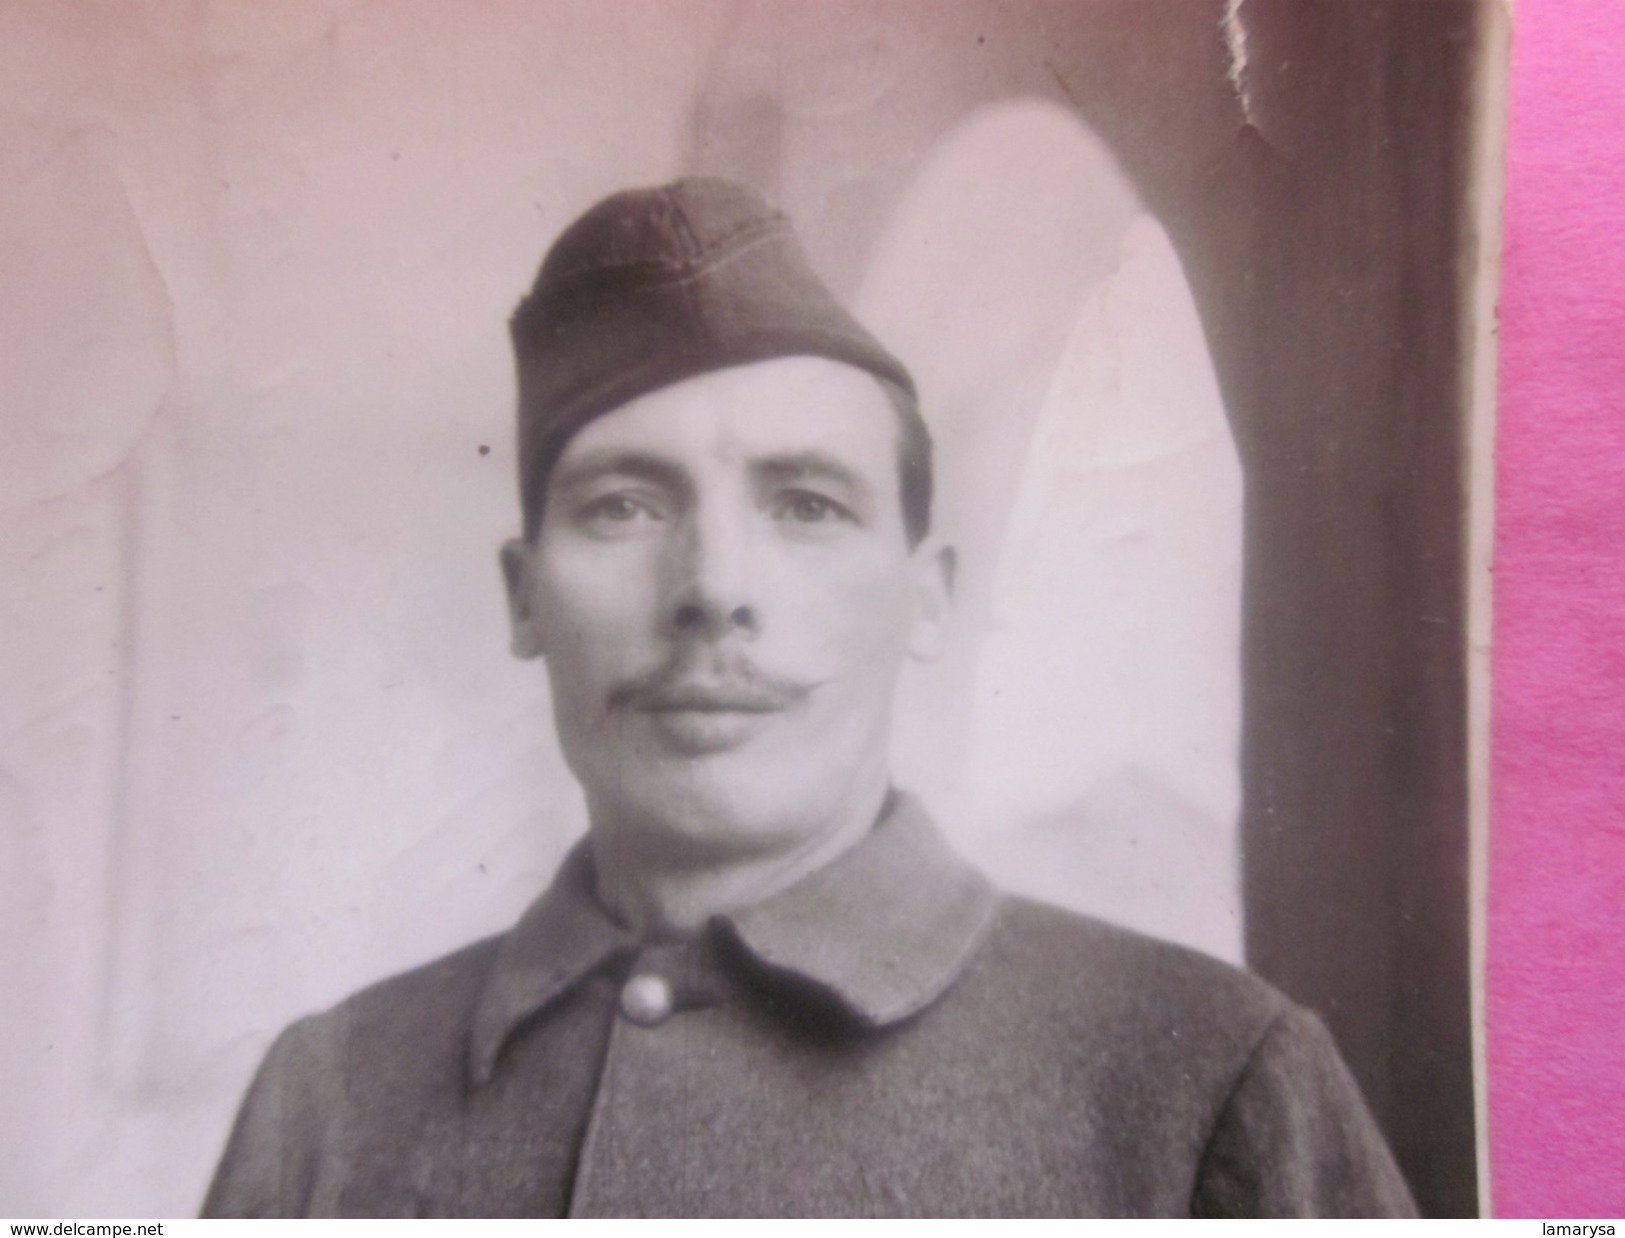 WW1 Photo Originale Identité Soldat Armée Française Terre Avec Calot Gabardine Moustache Photographie Guerre,Militaire - Guerre, Militaire